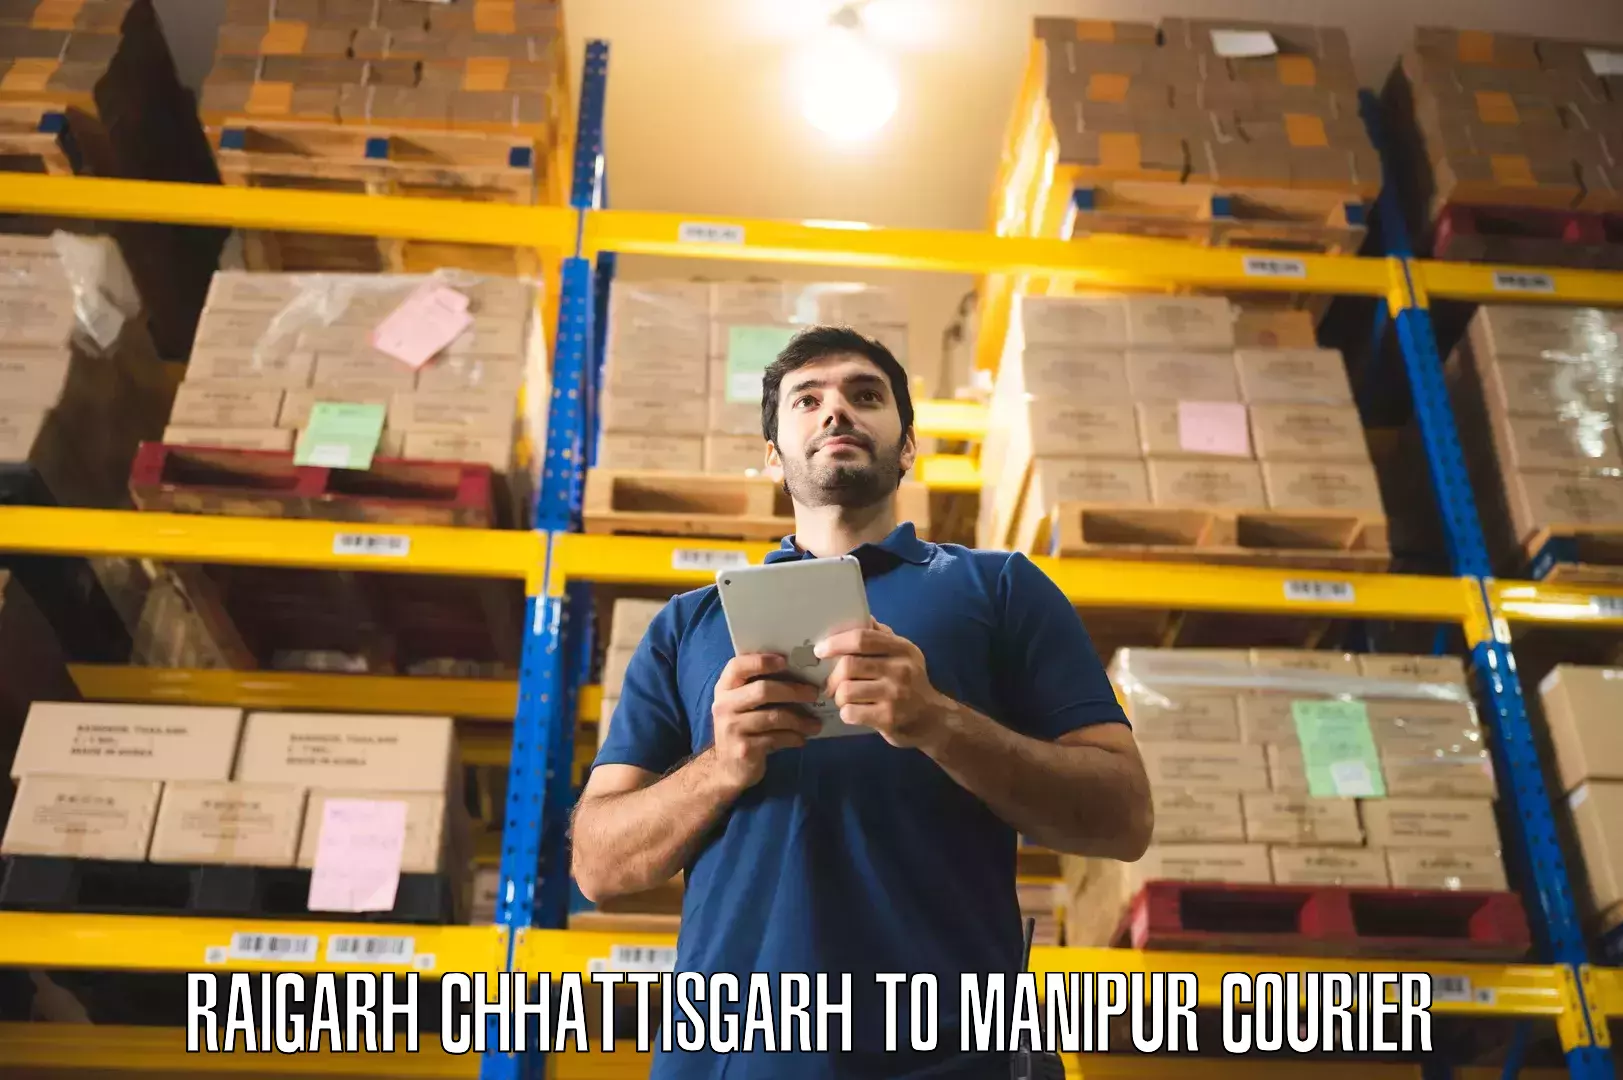 Quality furniture movers Raigarh Chhattisgarh to Senapati